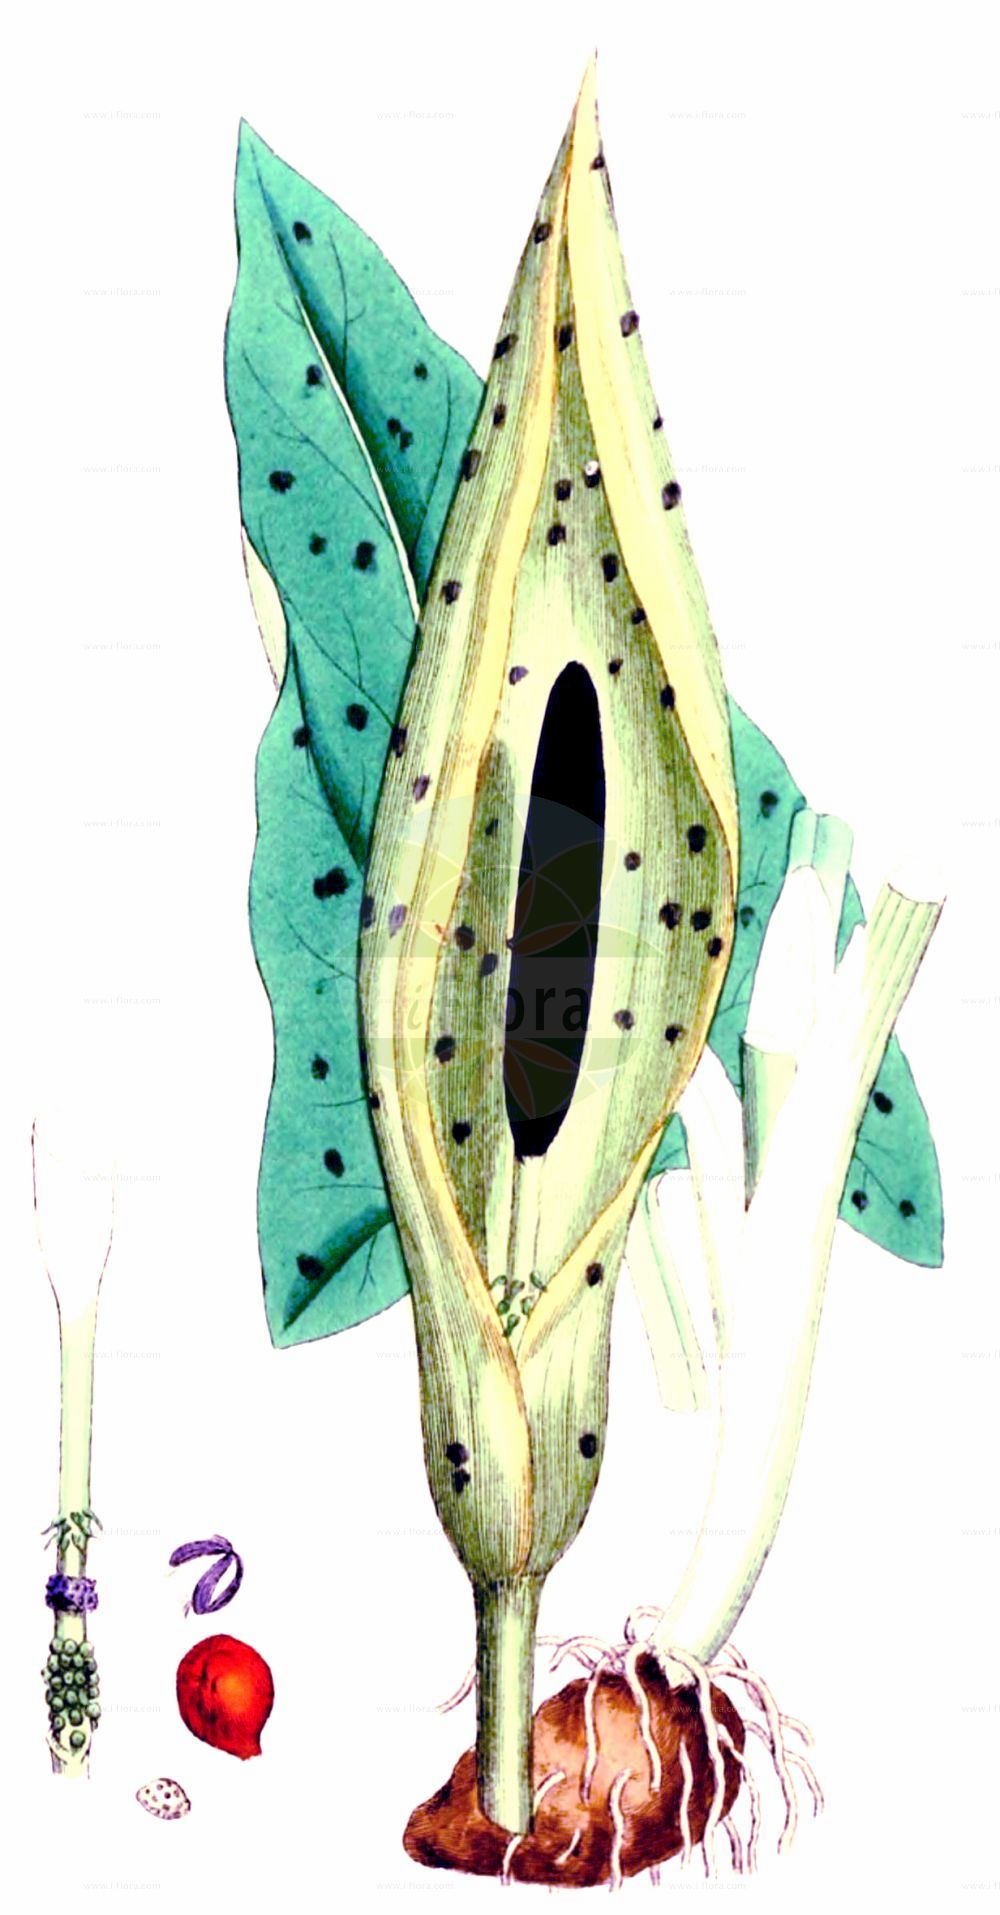 Historische Abbildung von Arum maculatum (Gefleckter Aronstab - Lords-and-Ladies). Das Bild zeigt Blatt, Bluete, Frucht und Same. ---- Historical Drawing of Arum maculatum (Gefleckter Aronstab - Lords-and-Ladies). The image is showing leaf, flower, fruit and seed.(Arum maculatum,Gefleckter Aronstab,Lords-and-Ladies,Arisarum maculatum,Arum gracile,Arum heldreichii,Arum immaculatum,Arum maculatum,Arum malyi,Arum pyrenaeum,Arum trapezuntinum,Arum vernale,Arum vulgare,Arum zelebori,Gefleckter Aronstab,Suedoestlicher Aronstab,Lords-and-Ladies,Arum,Aronstab,Arum Lily,Araceae,Aronstabgewächse,Arum Lily family,Blatt,Bluete,Frucht,Same,leaf,flower,fruit,seed,Sowerby (1790-1813))